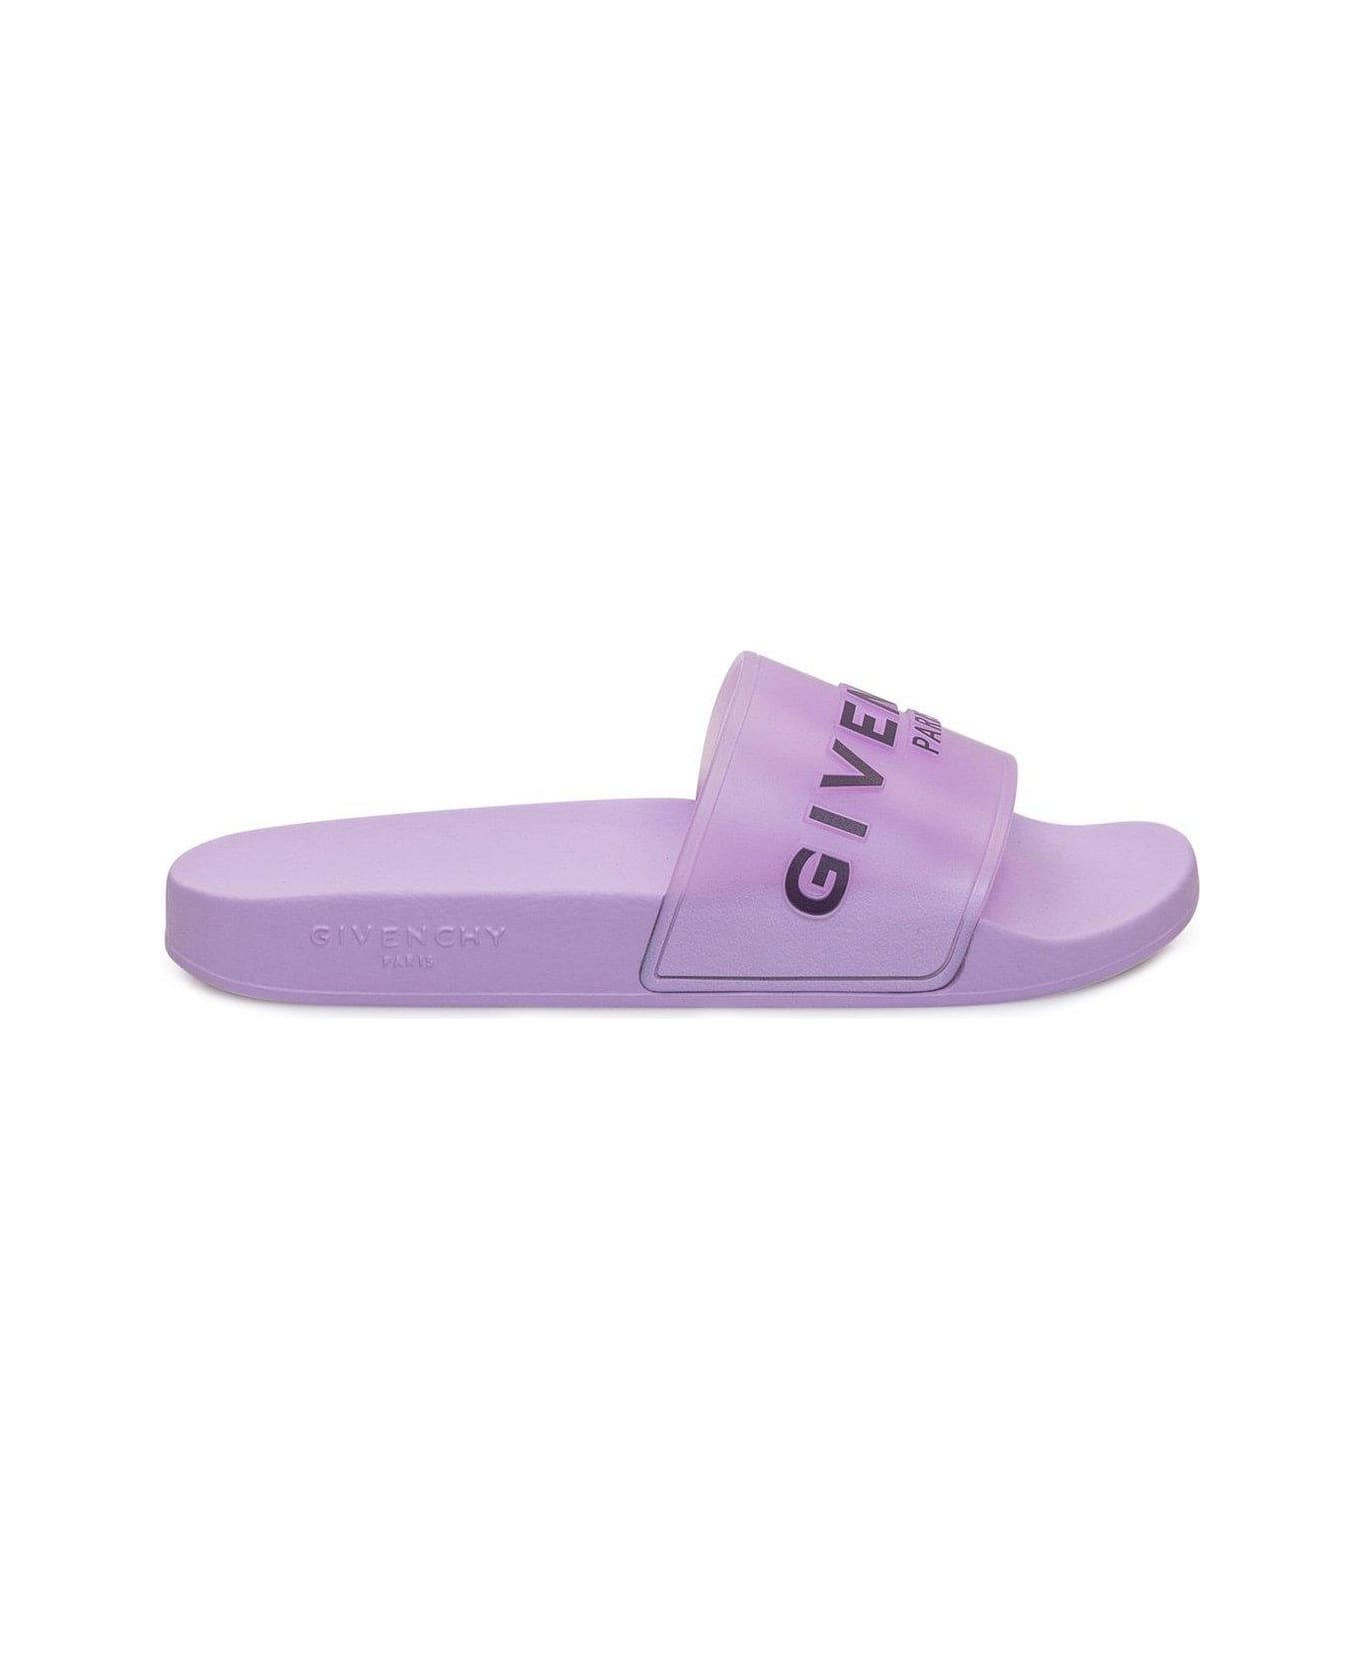 Givenchy Paris Flat Sandals - LILAC